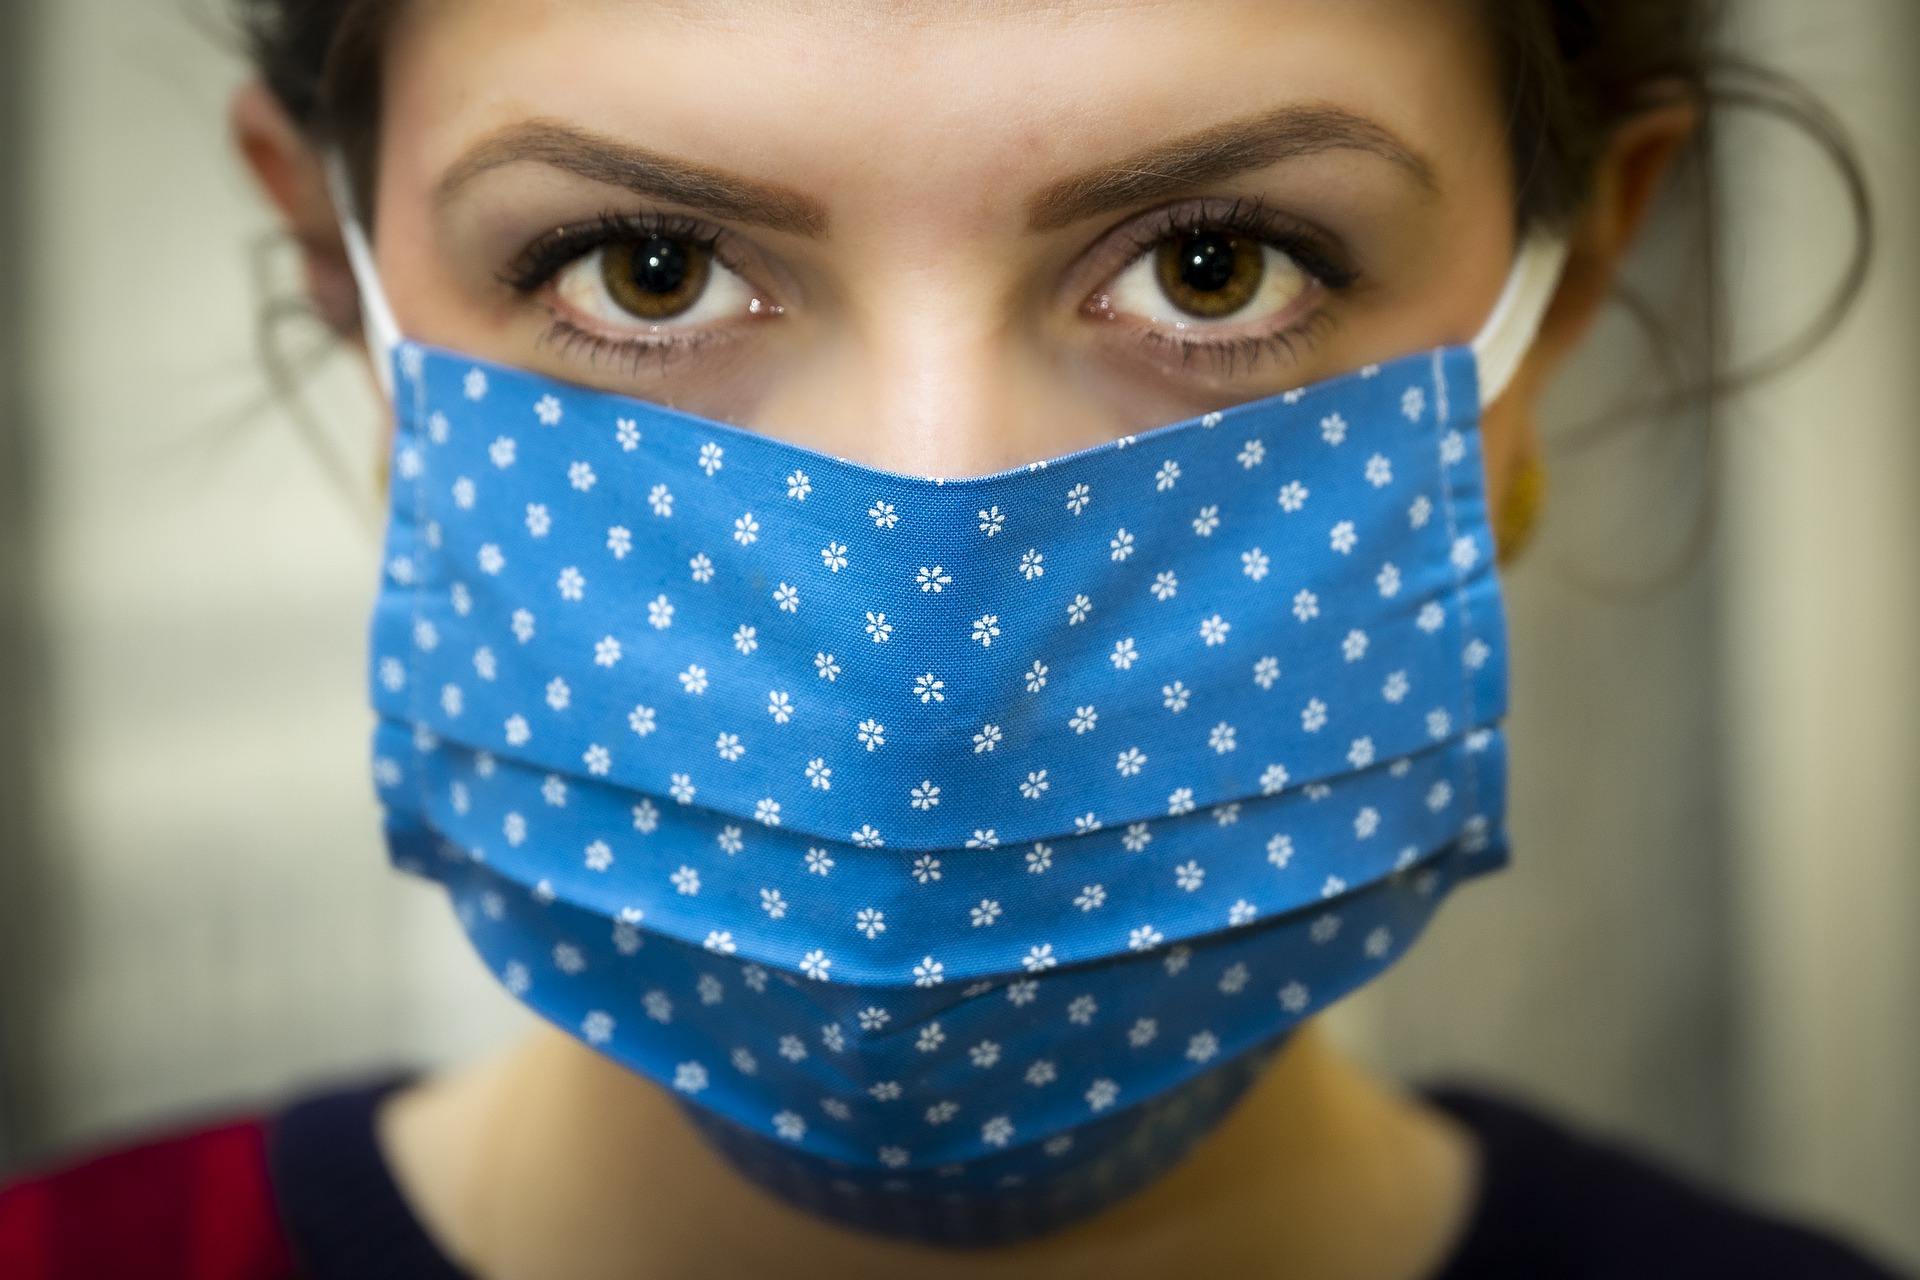 Viroses: relaxamento do uso de máscaras contra Covid-19 fez aumentar casos de outras síndromes respiratórias, alerta infectologista